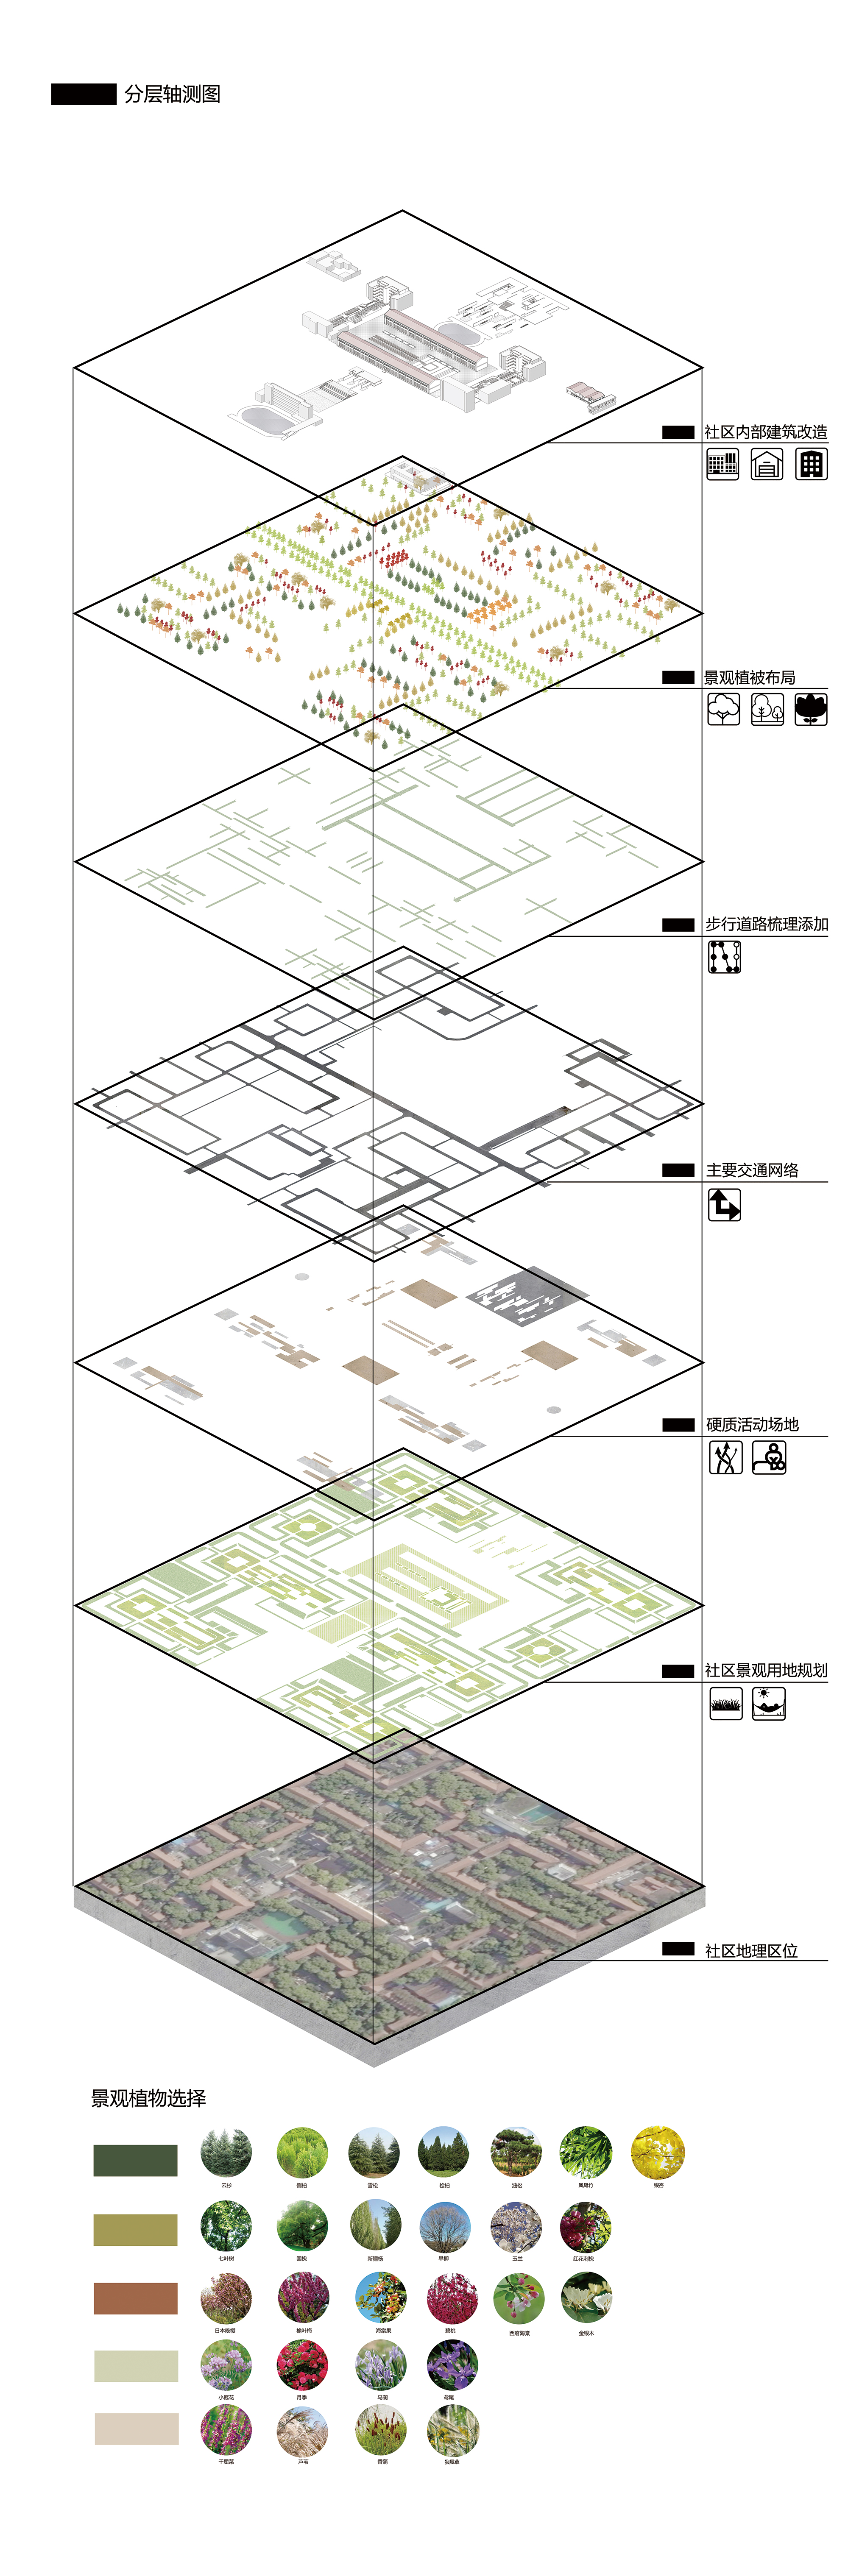 集体式社区环境更新设计—以武汉红房子社区改造为例 轴测爆炸